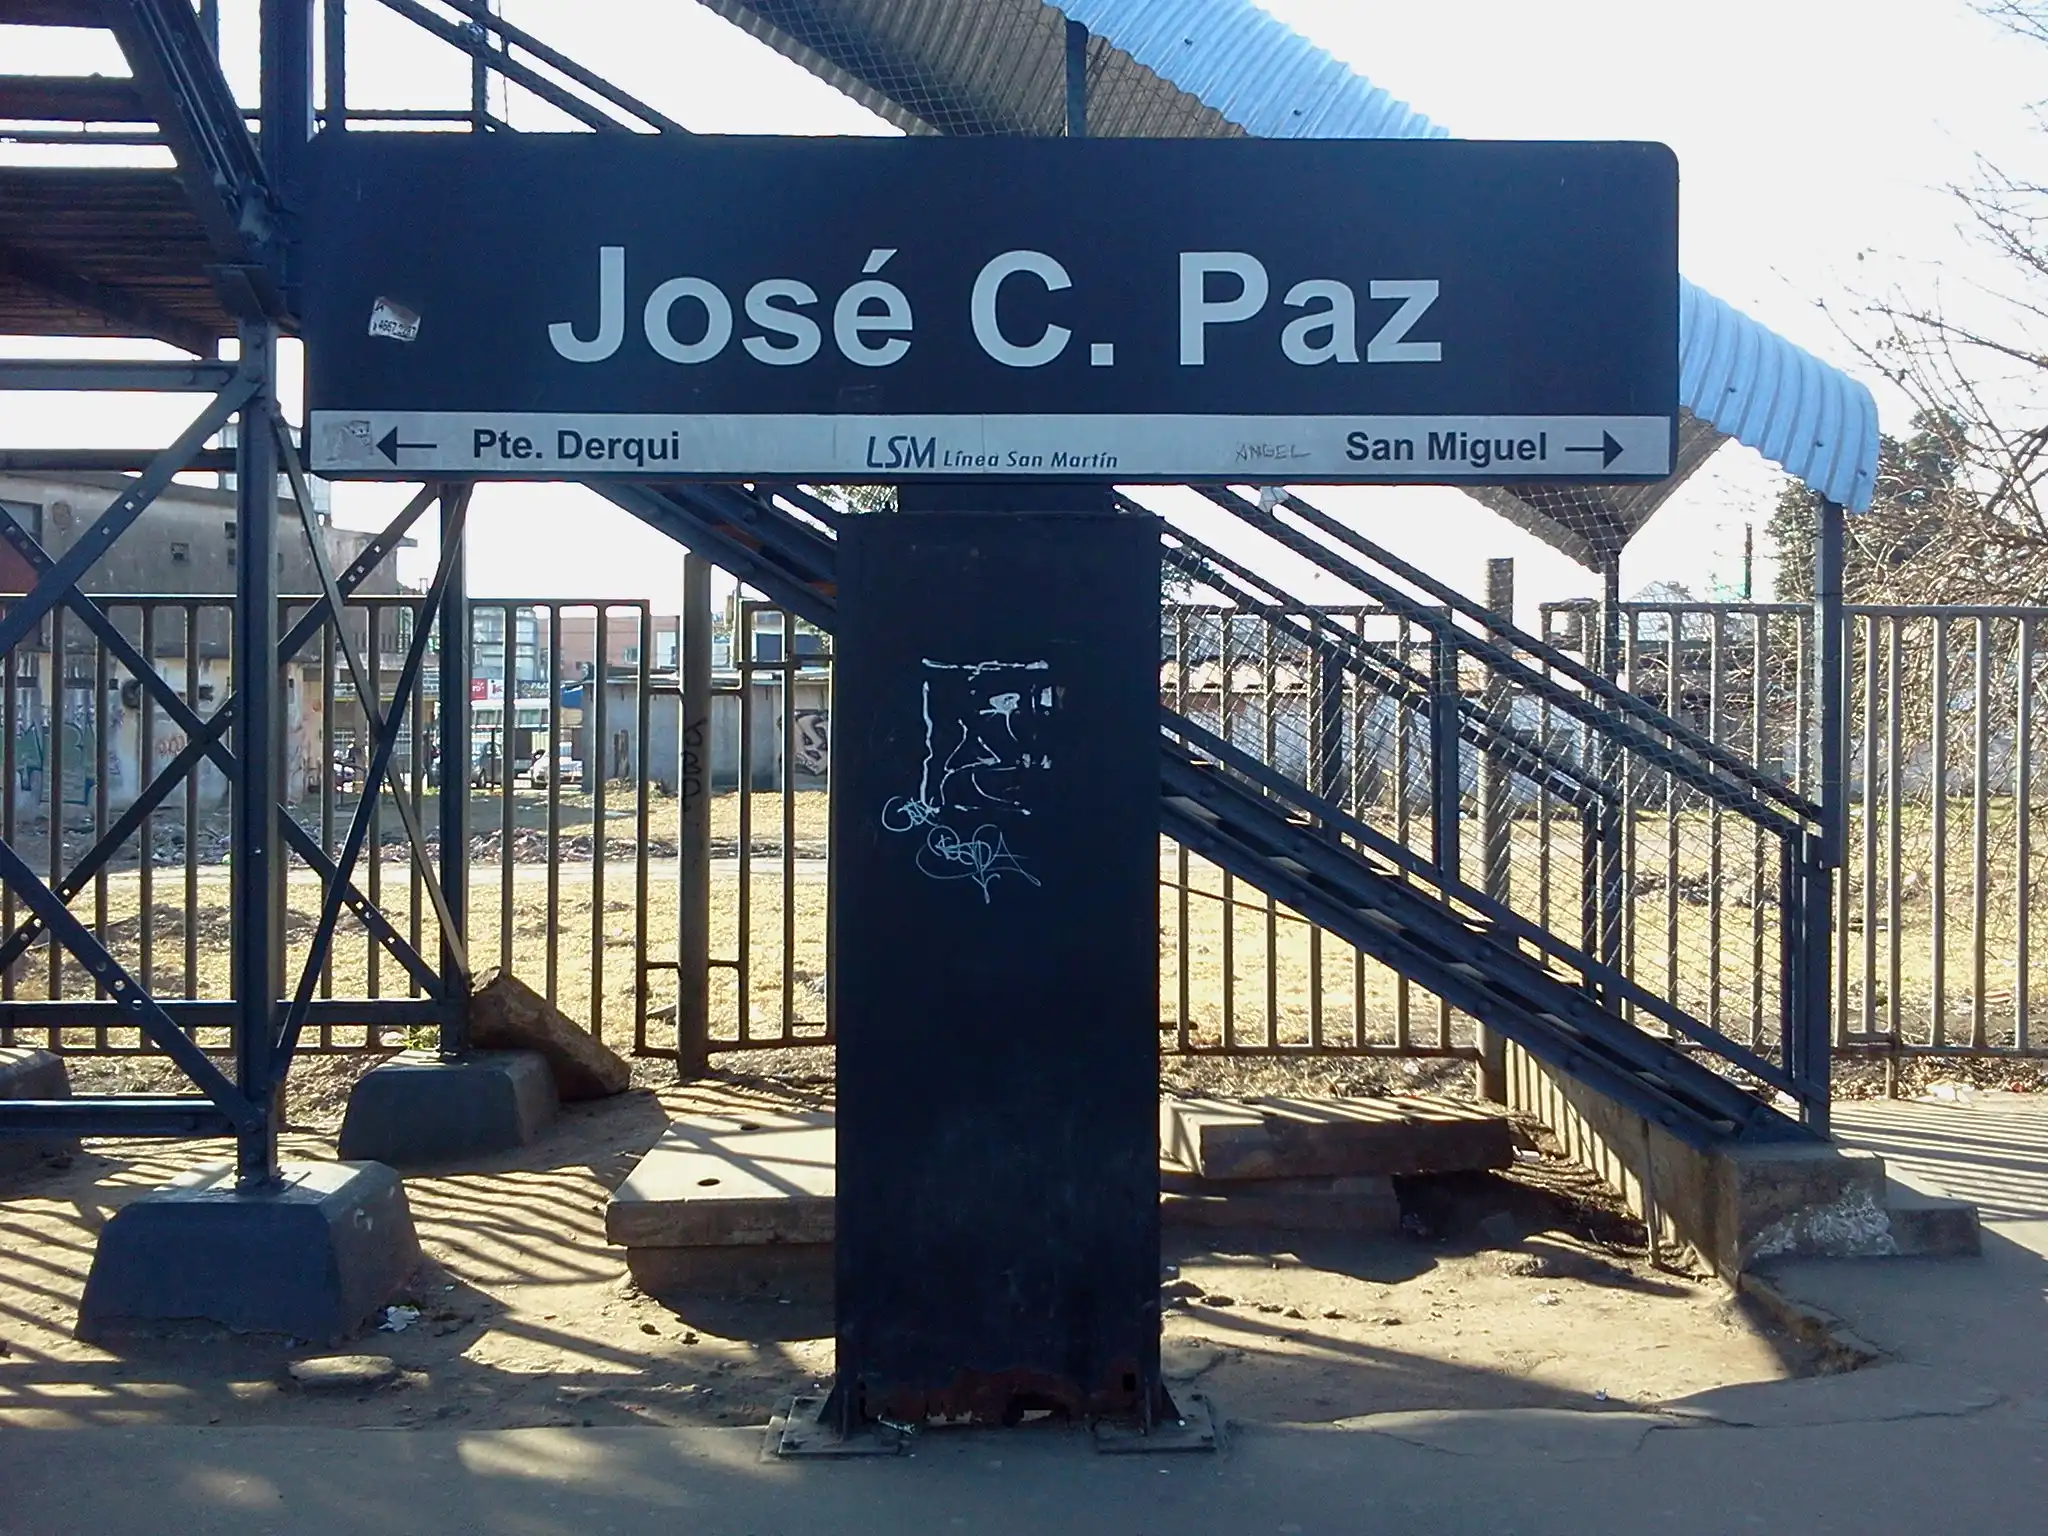 José C. Paz tourism